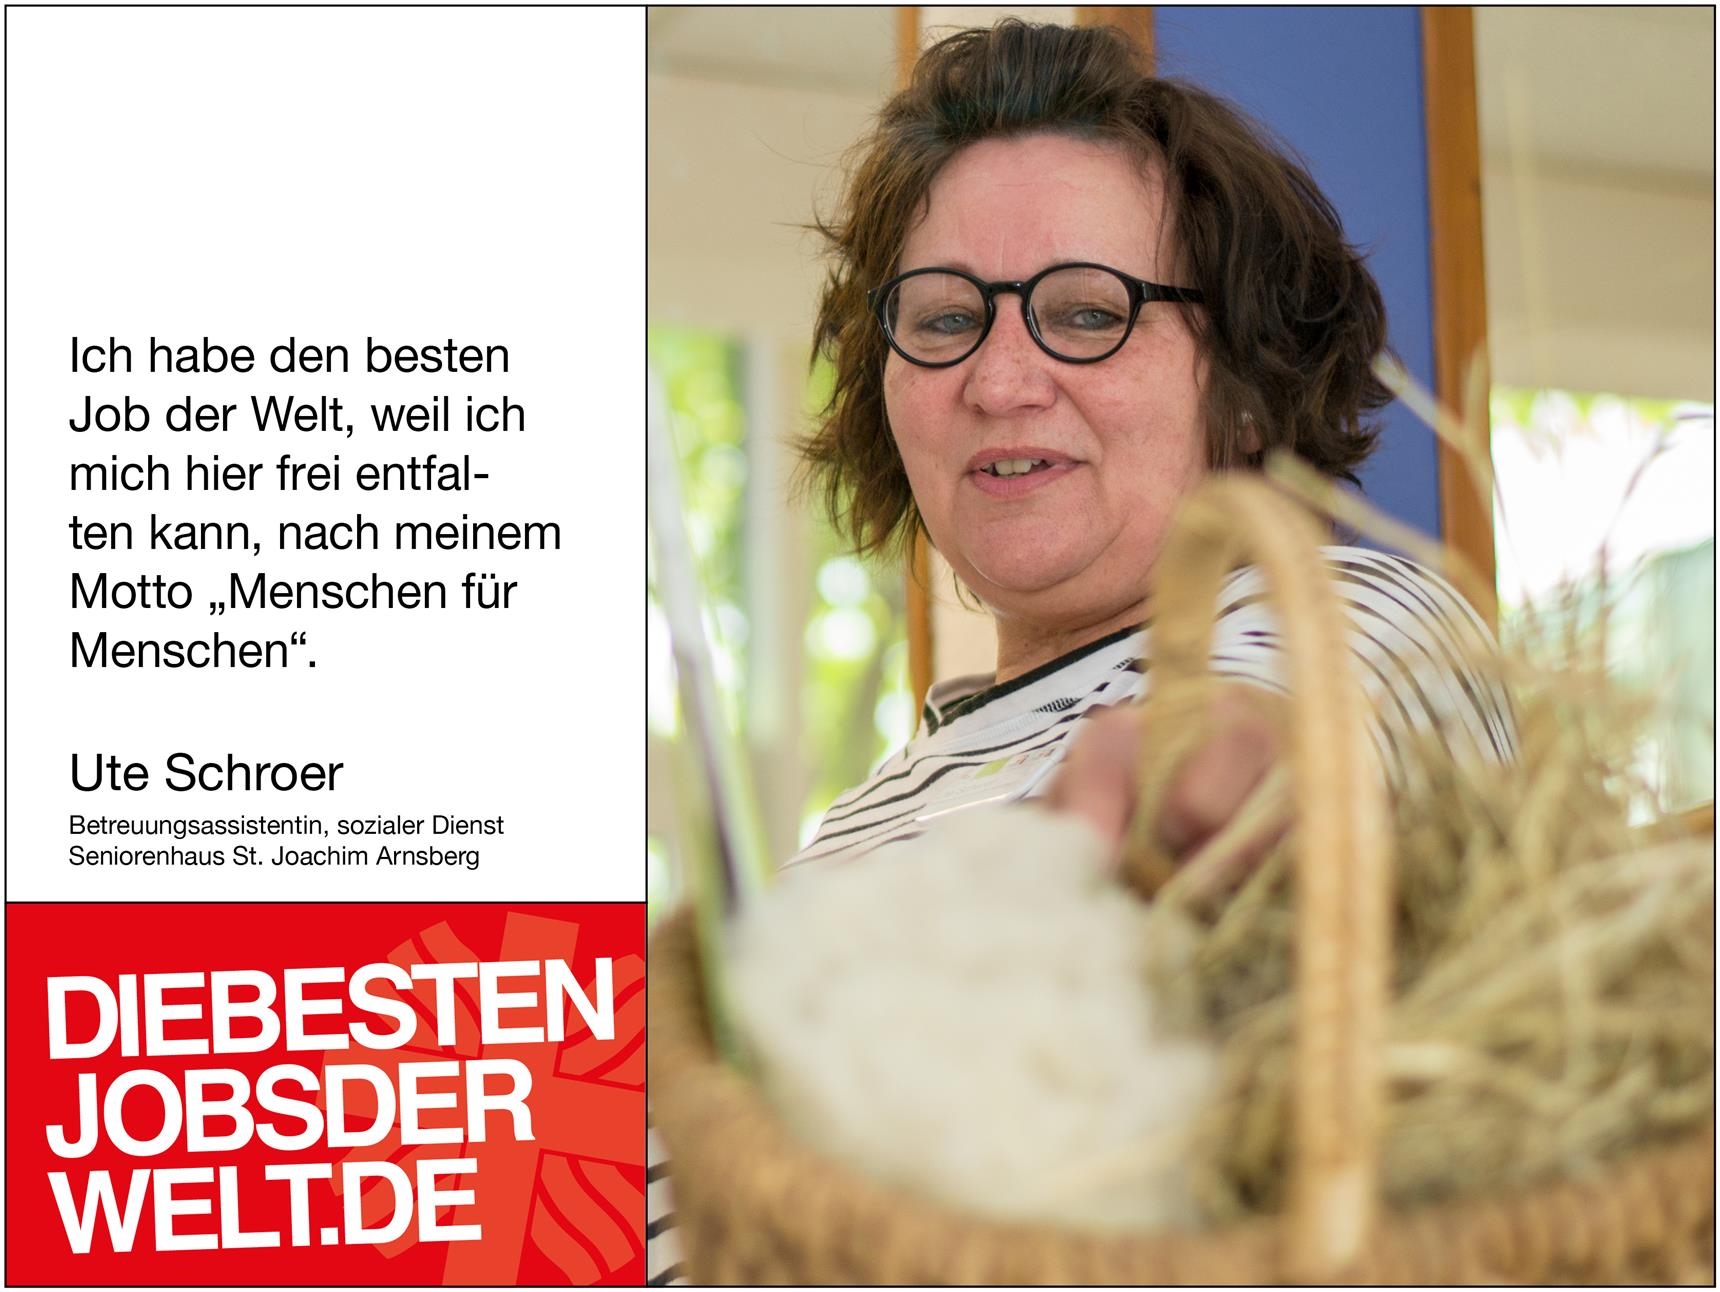 diebestenjobsderwelt - Ute Schroer (Foto: Miriam Konietzny)